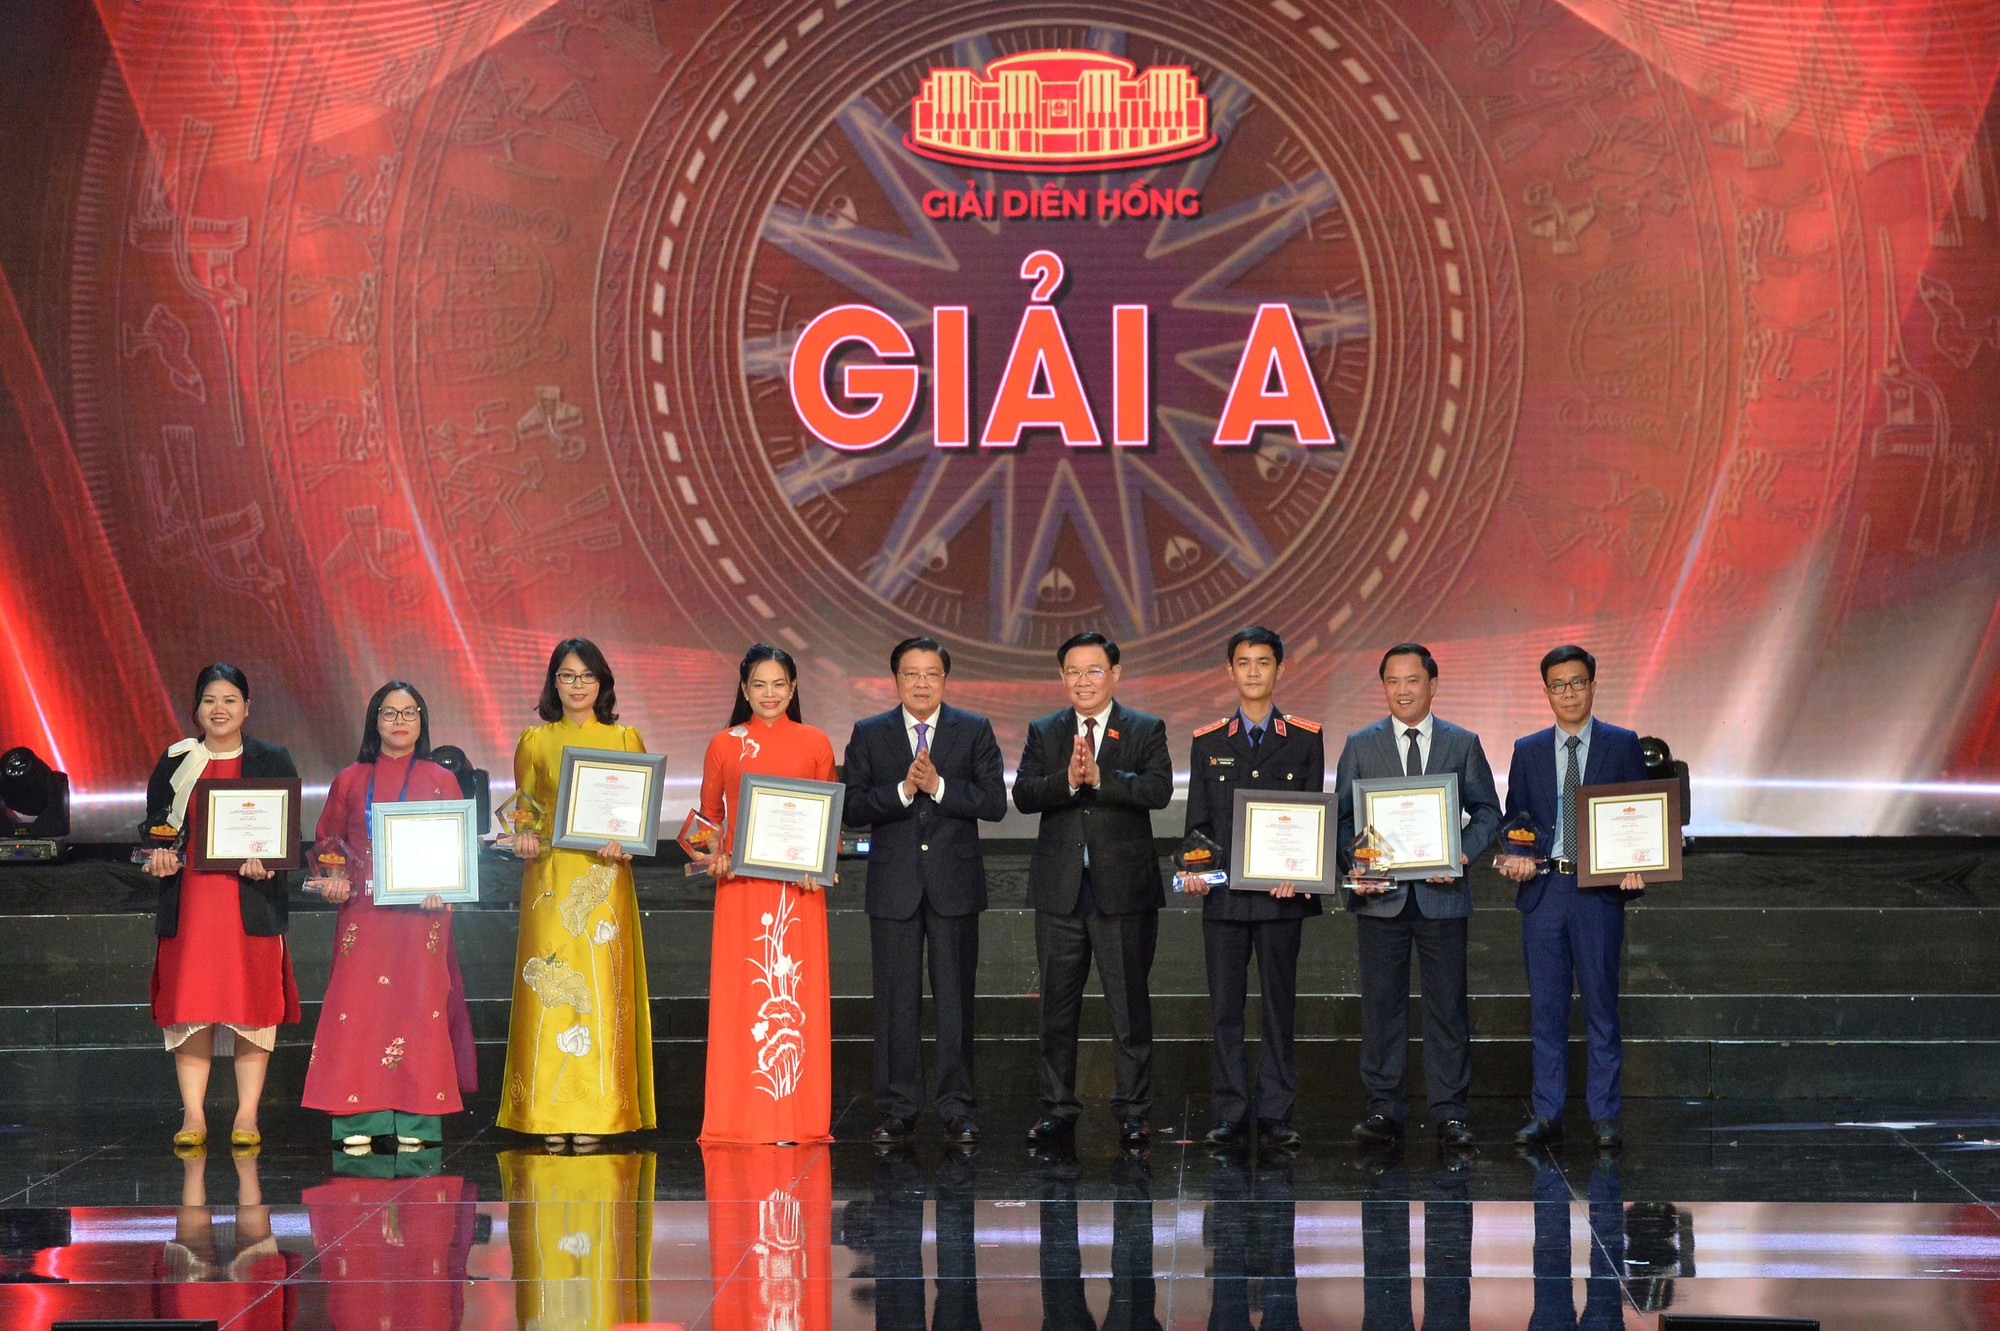  Báo điện tử Tổ Quốc đoạt giải C Giải Diên Hồng  - Ảnh 3.